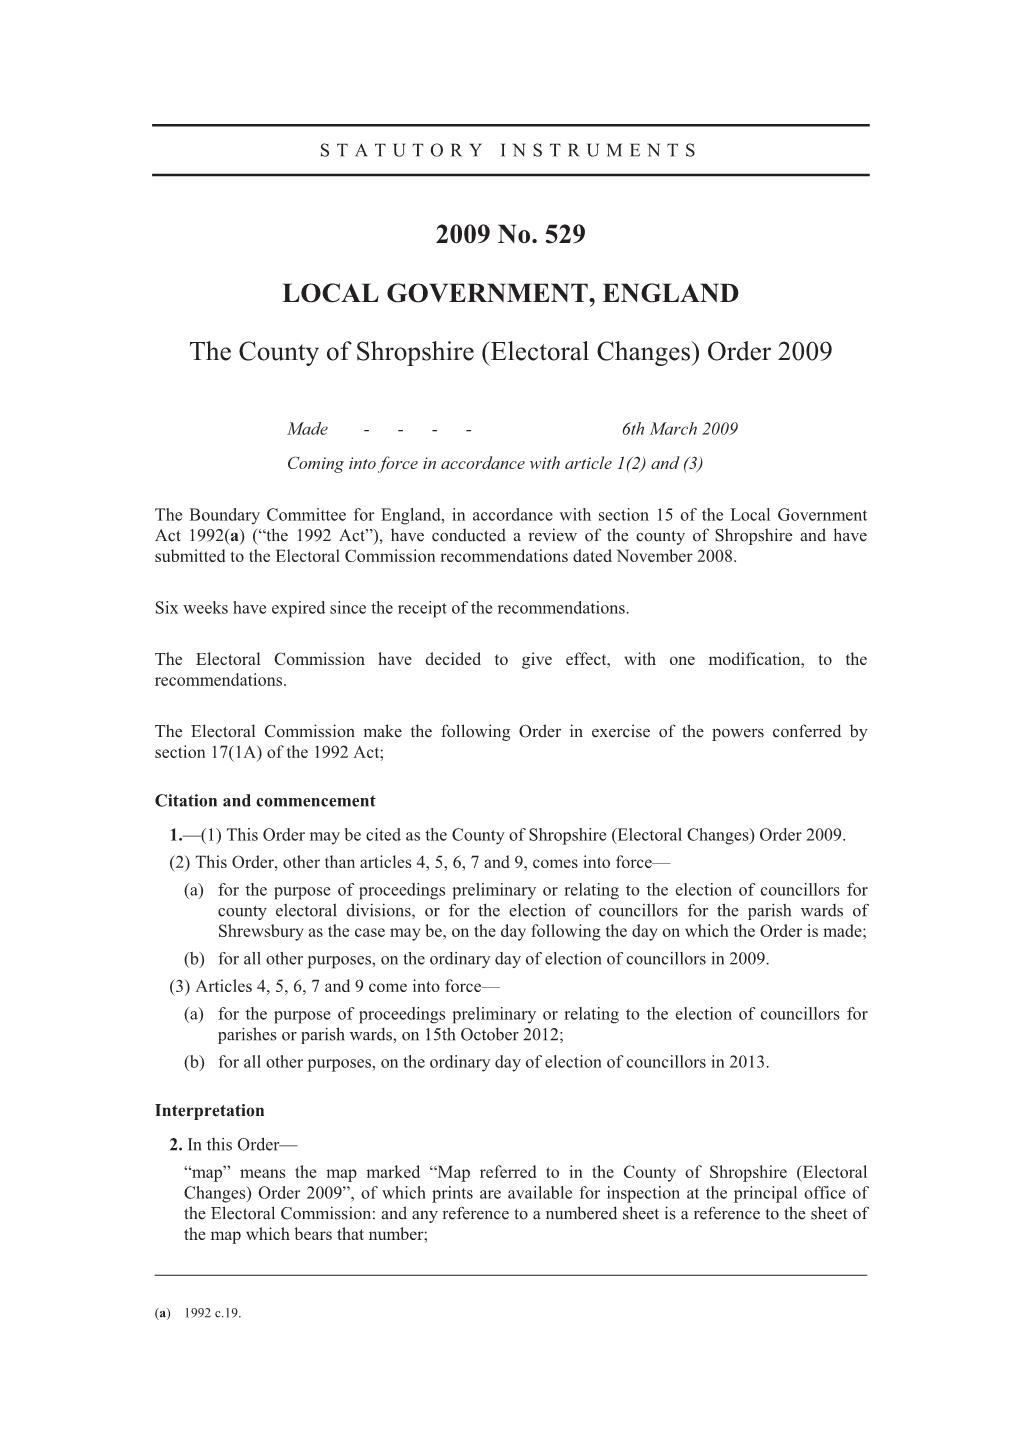 Electoral Changes) Order 2009